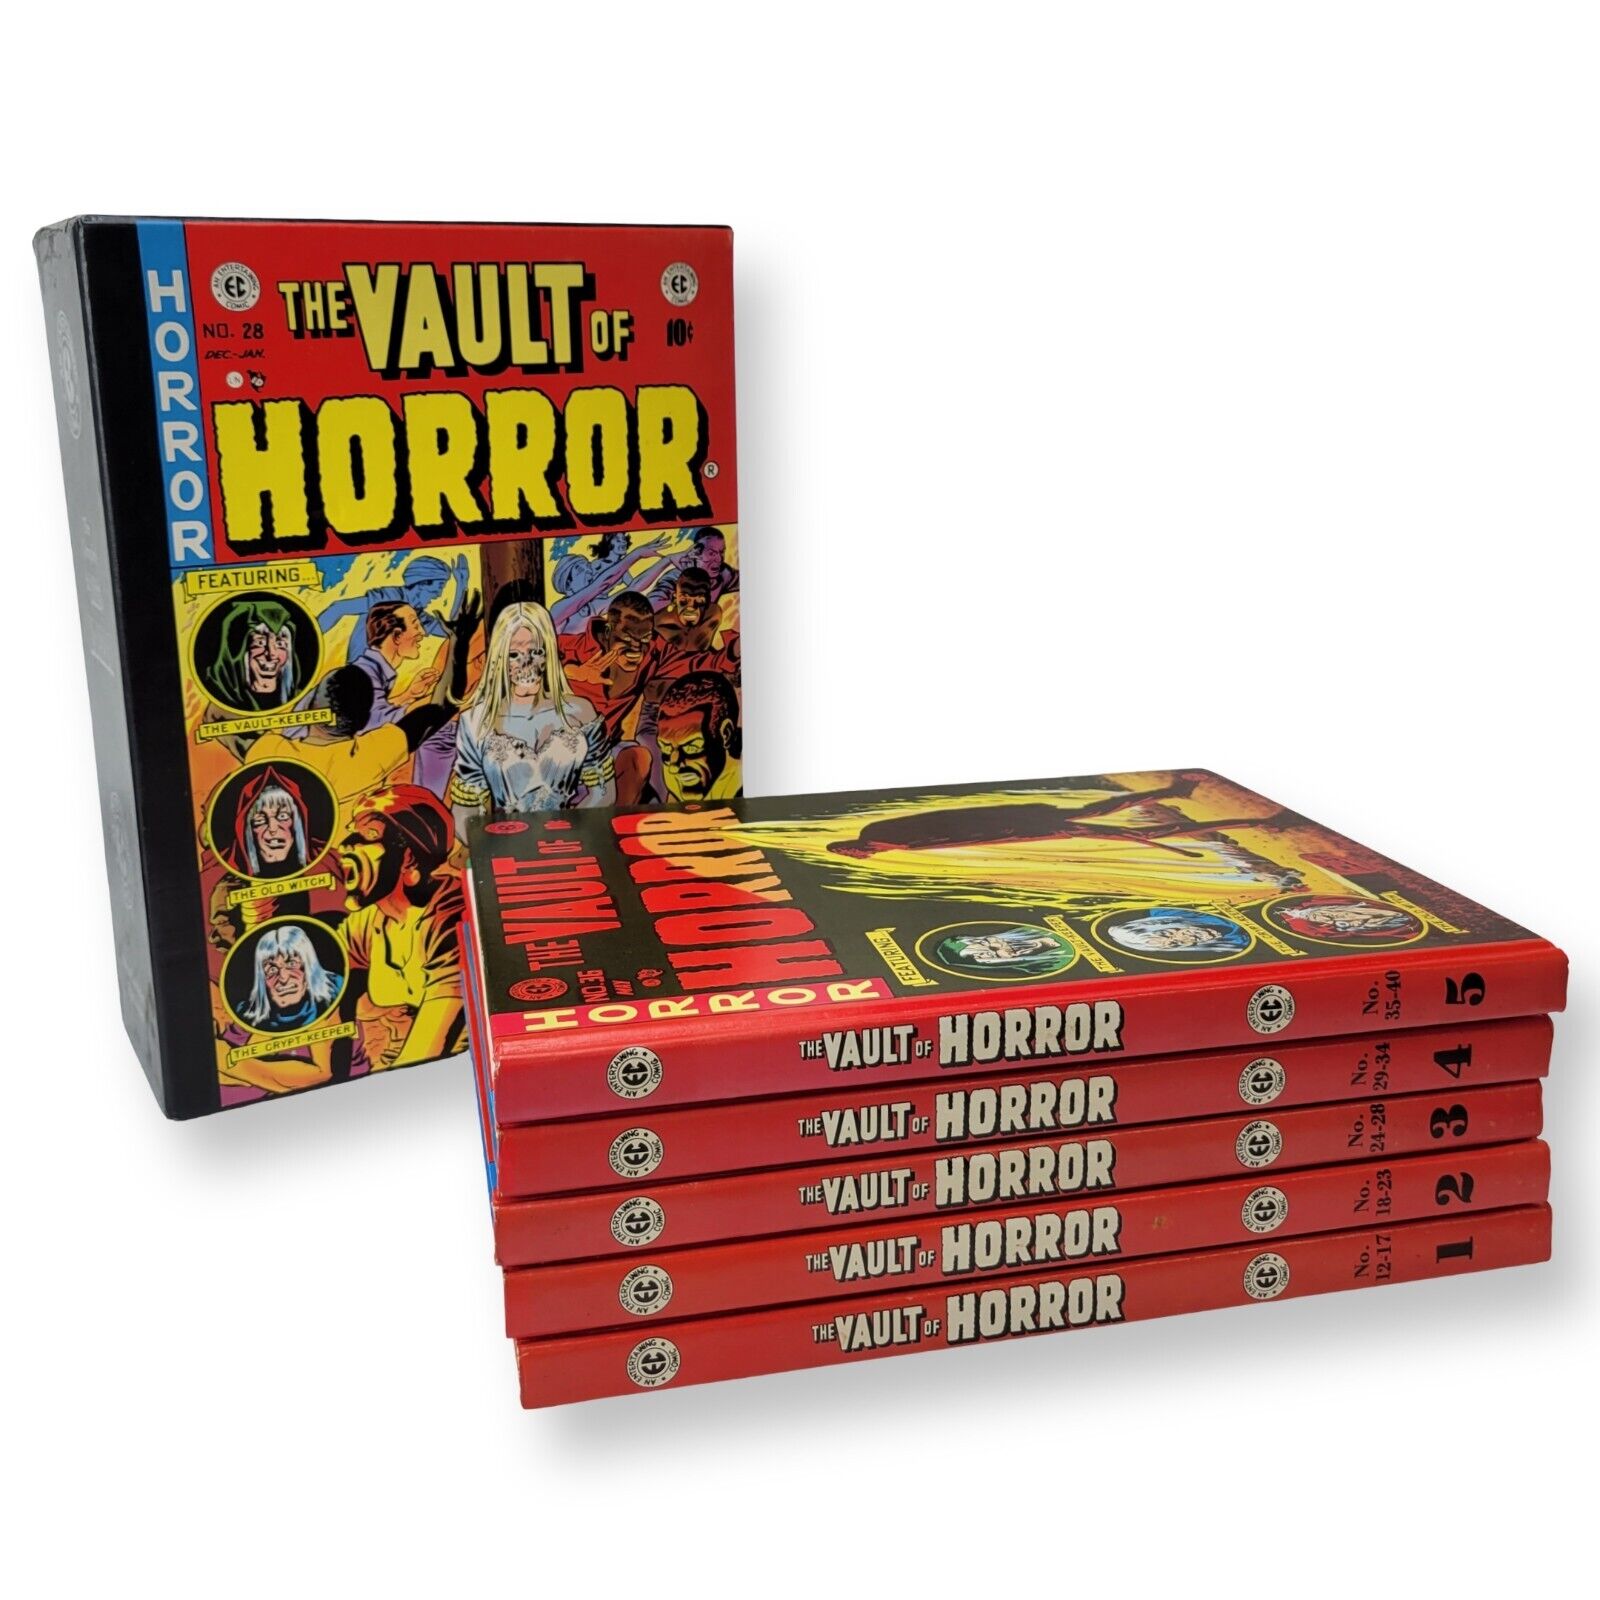 The Complete Vault of Horror Hardcover Box Set Russ Cochran EC Comics Vol 1-5